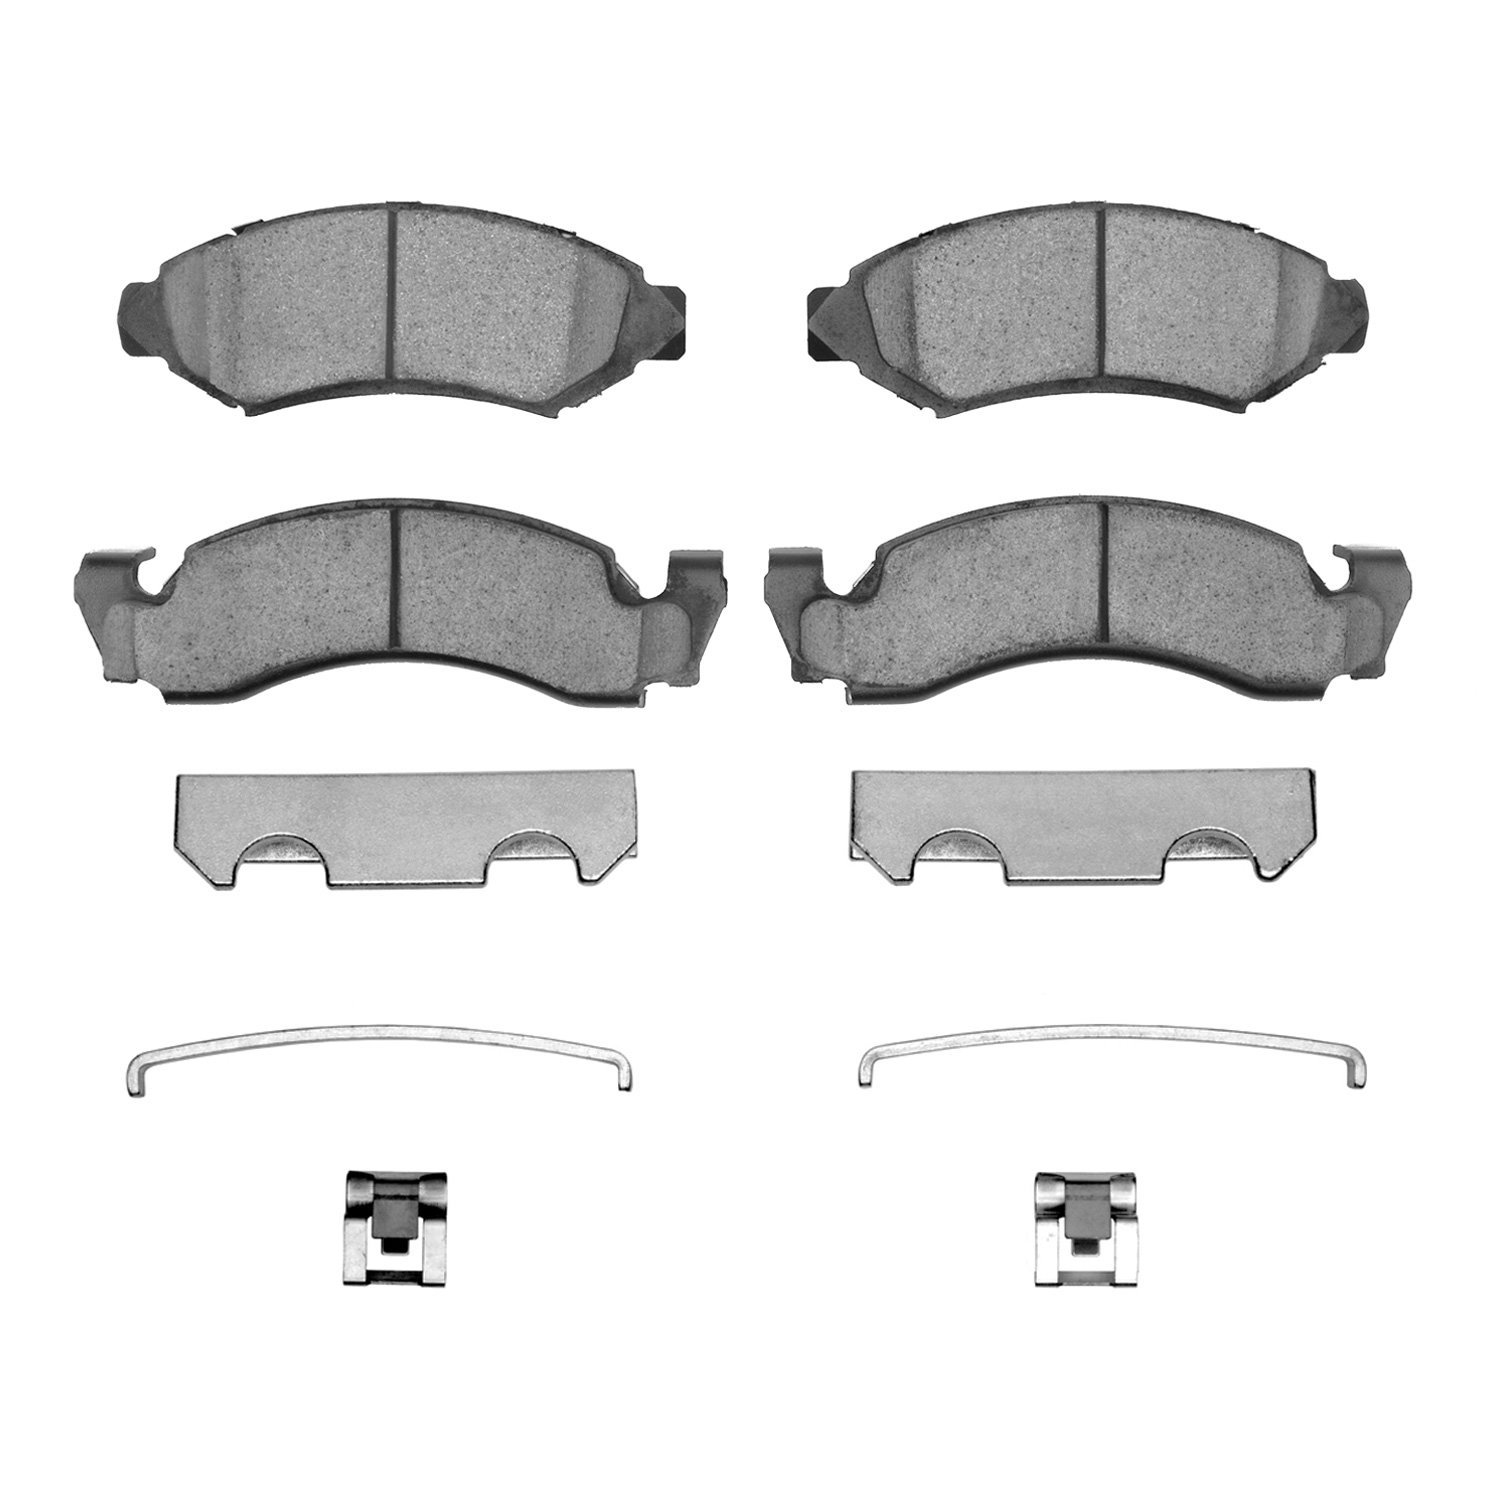 Ceramic Brake Pads & Hardware Kit, 1972-1980 Fits Multiple Makes/Models, Position: Front